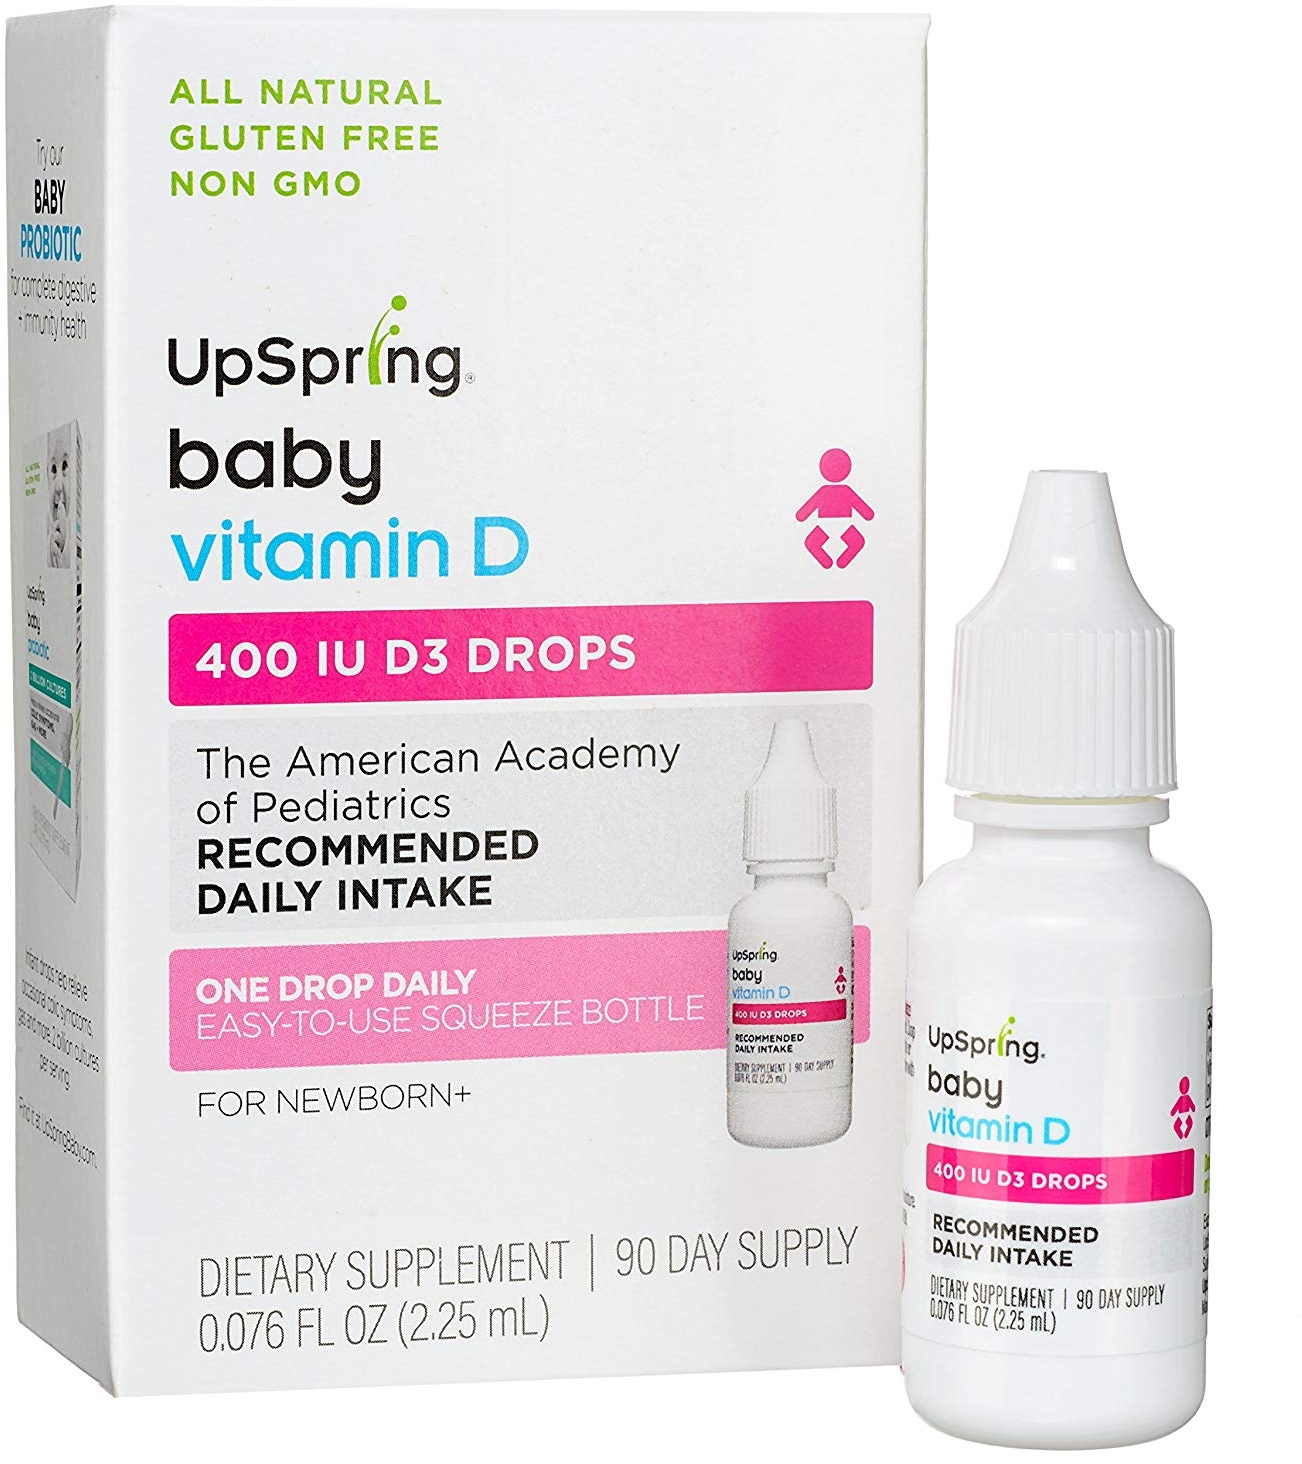 UpSpring Baby Vitamin D 400 IU D3 Drops cho trẻ sơ sinh